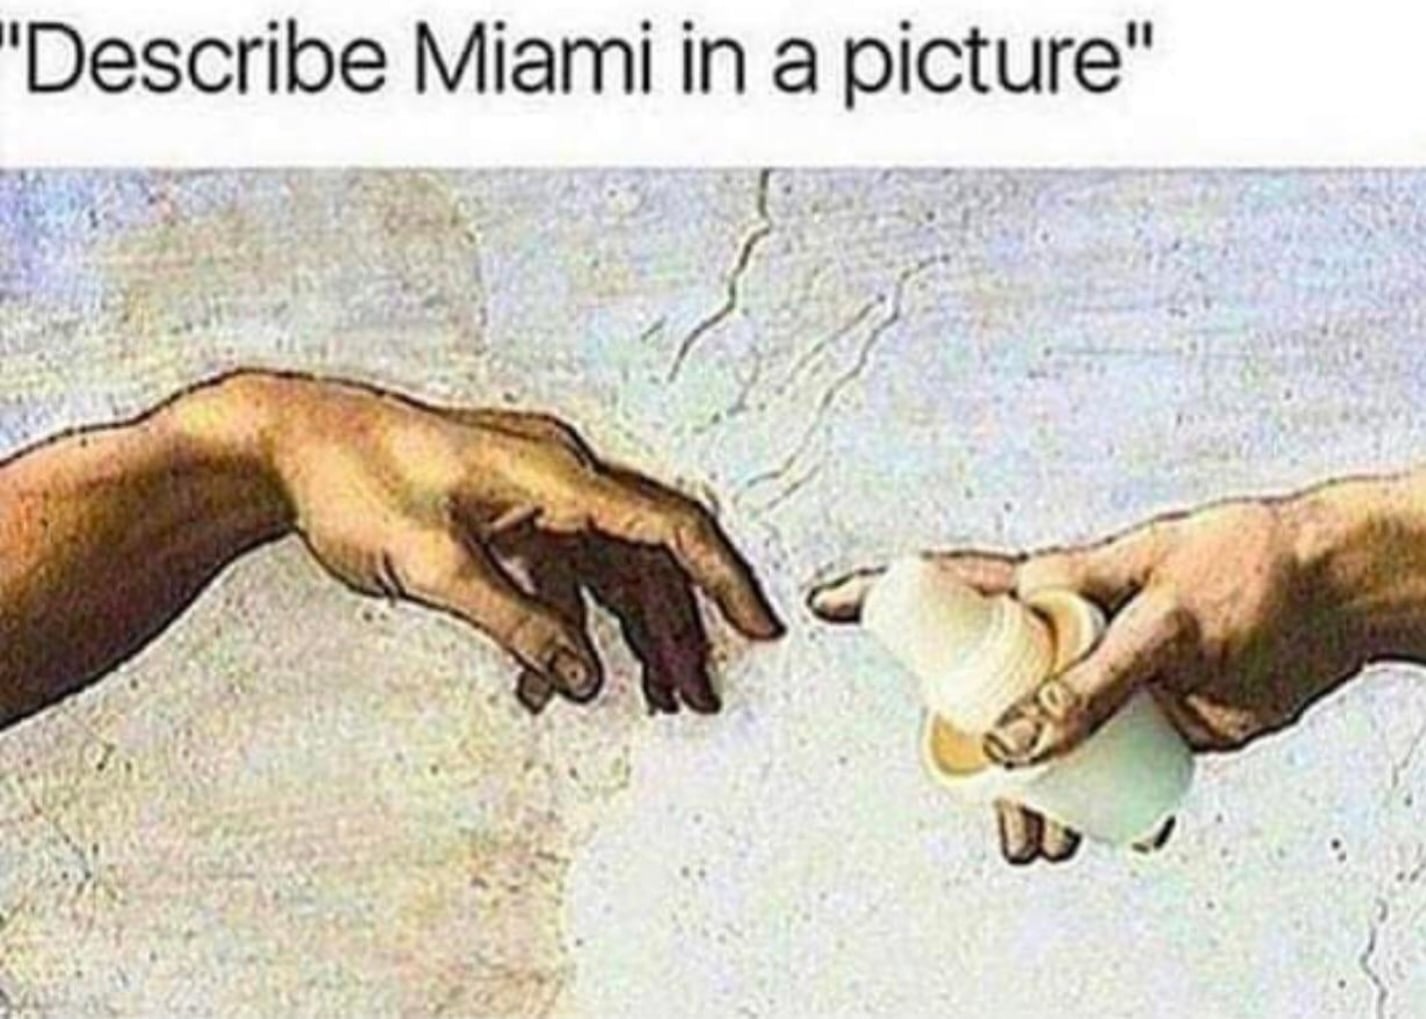 Miami cafecito meme